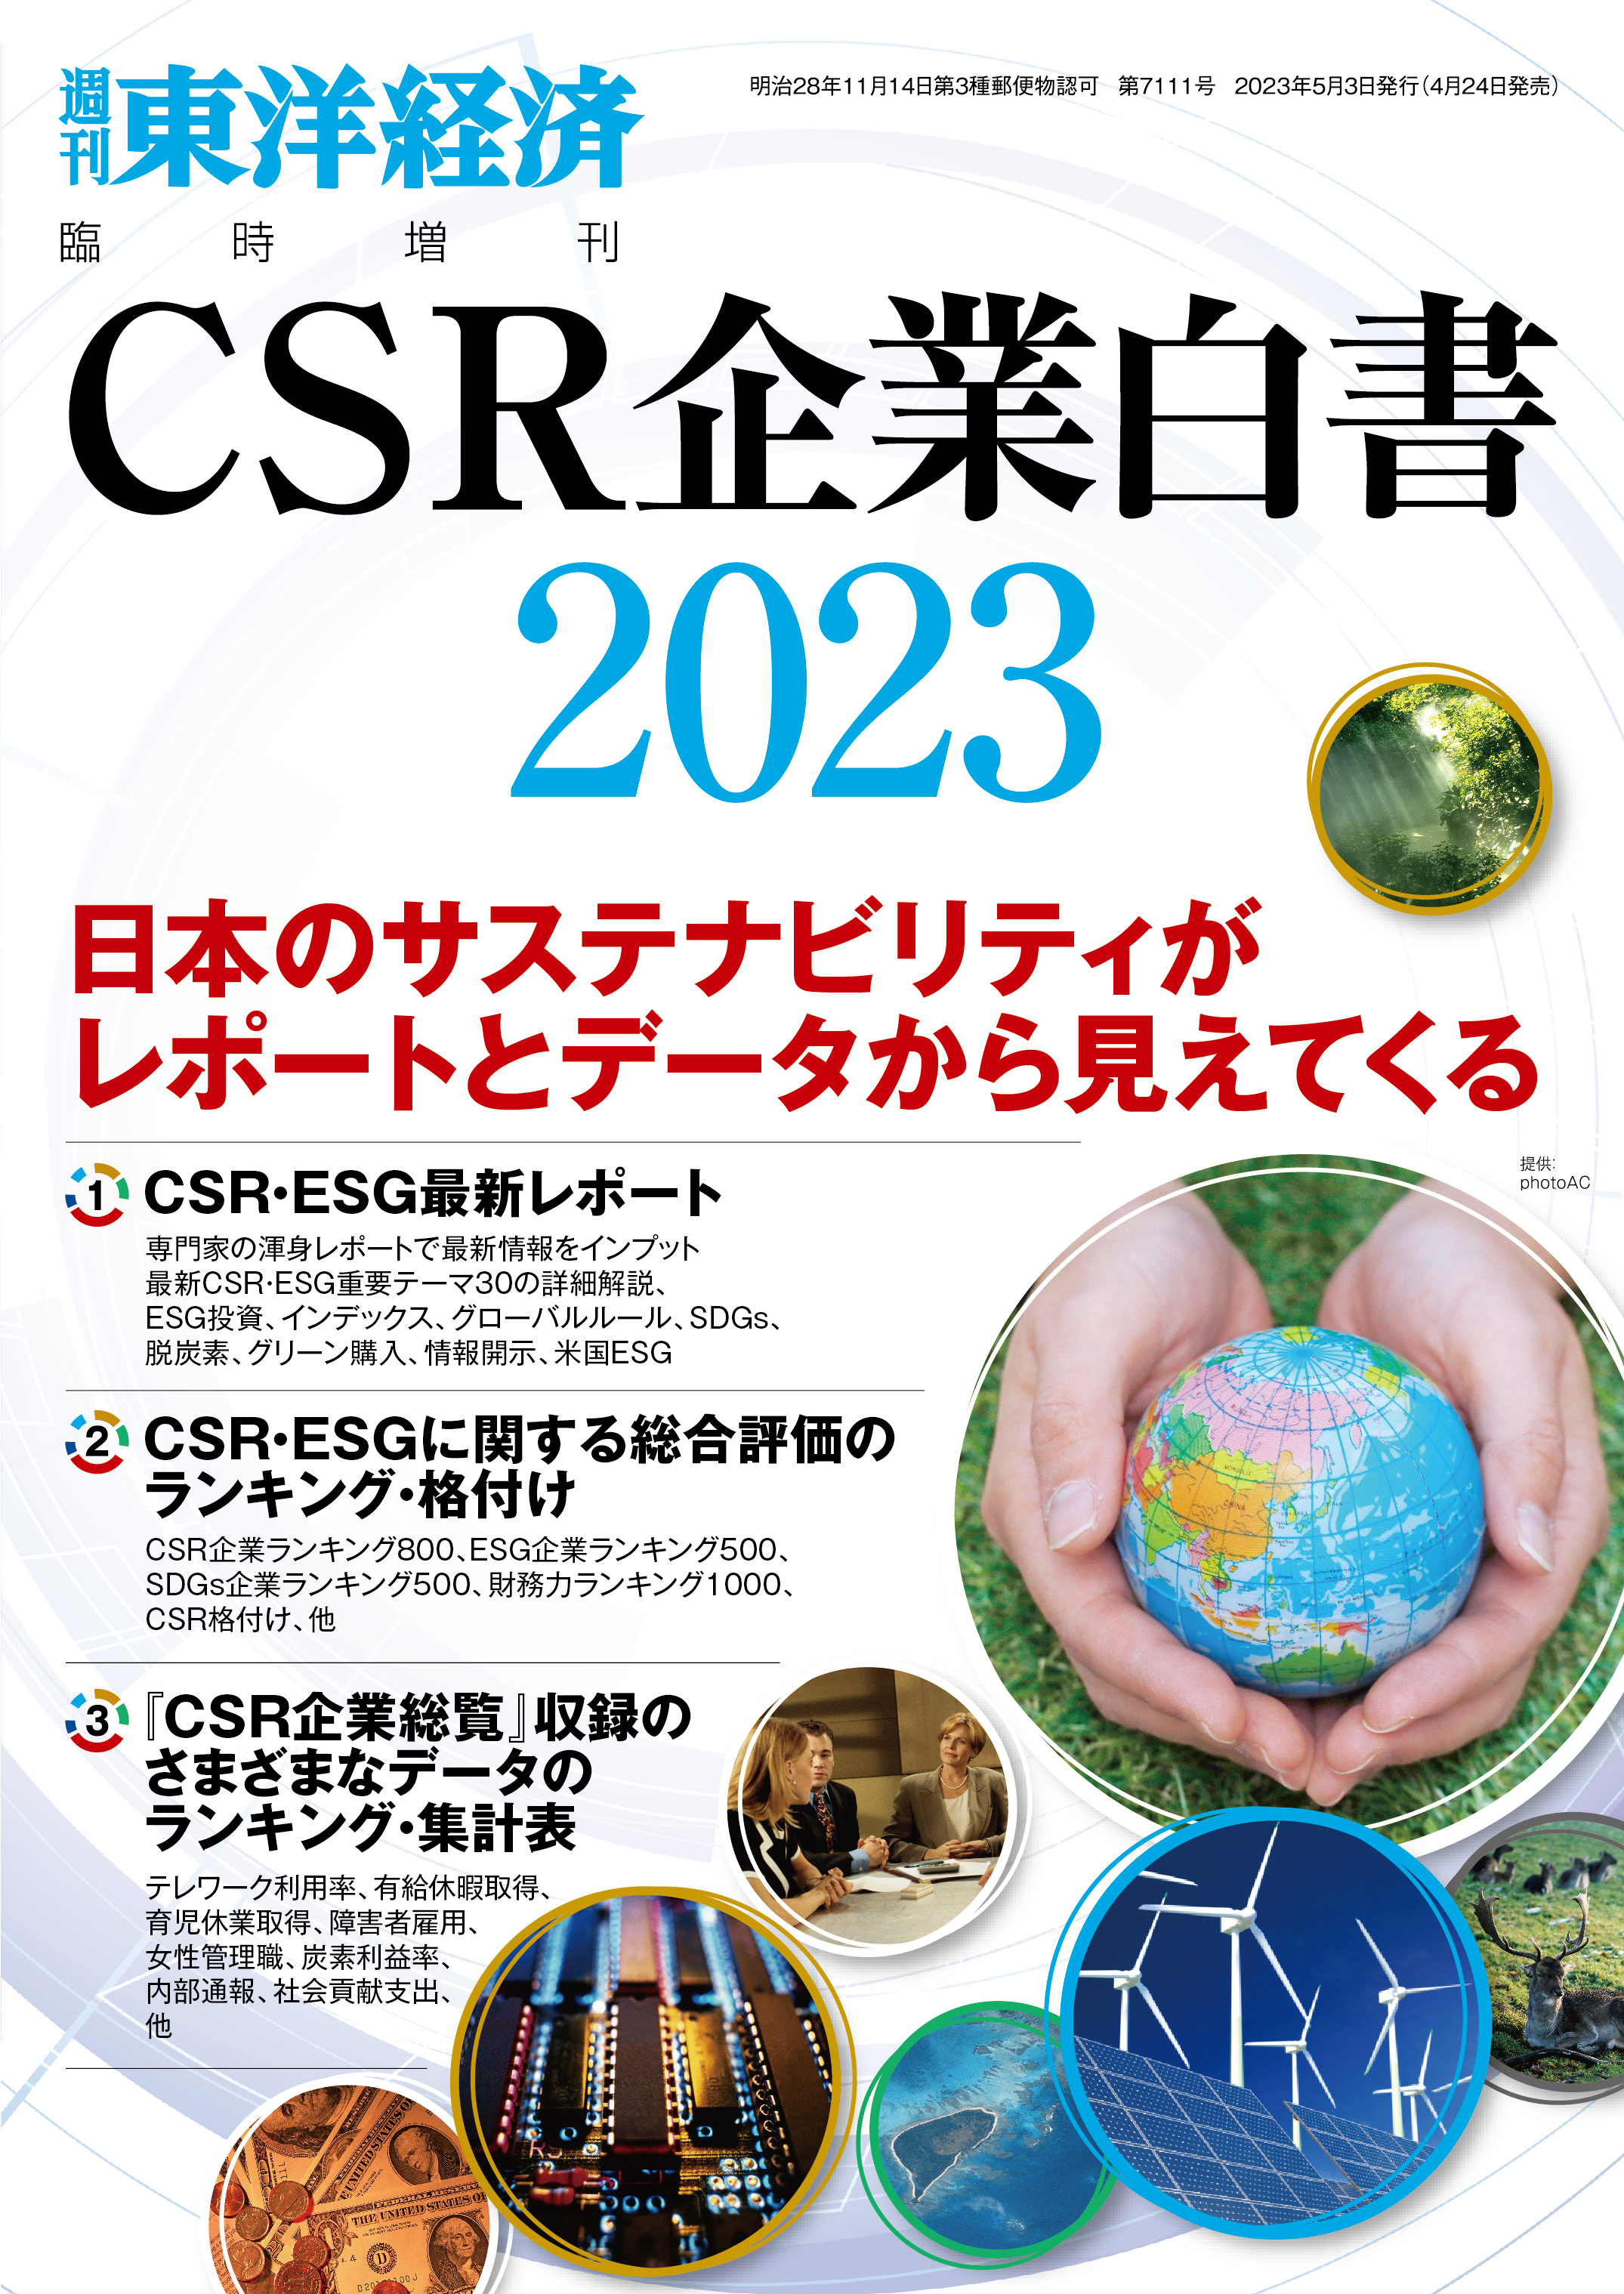 CSR企業白書